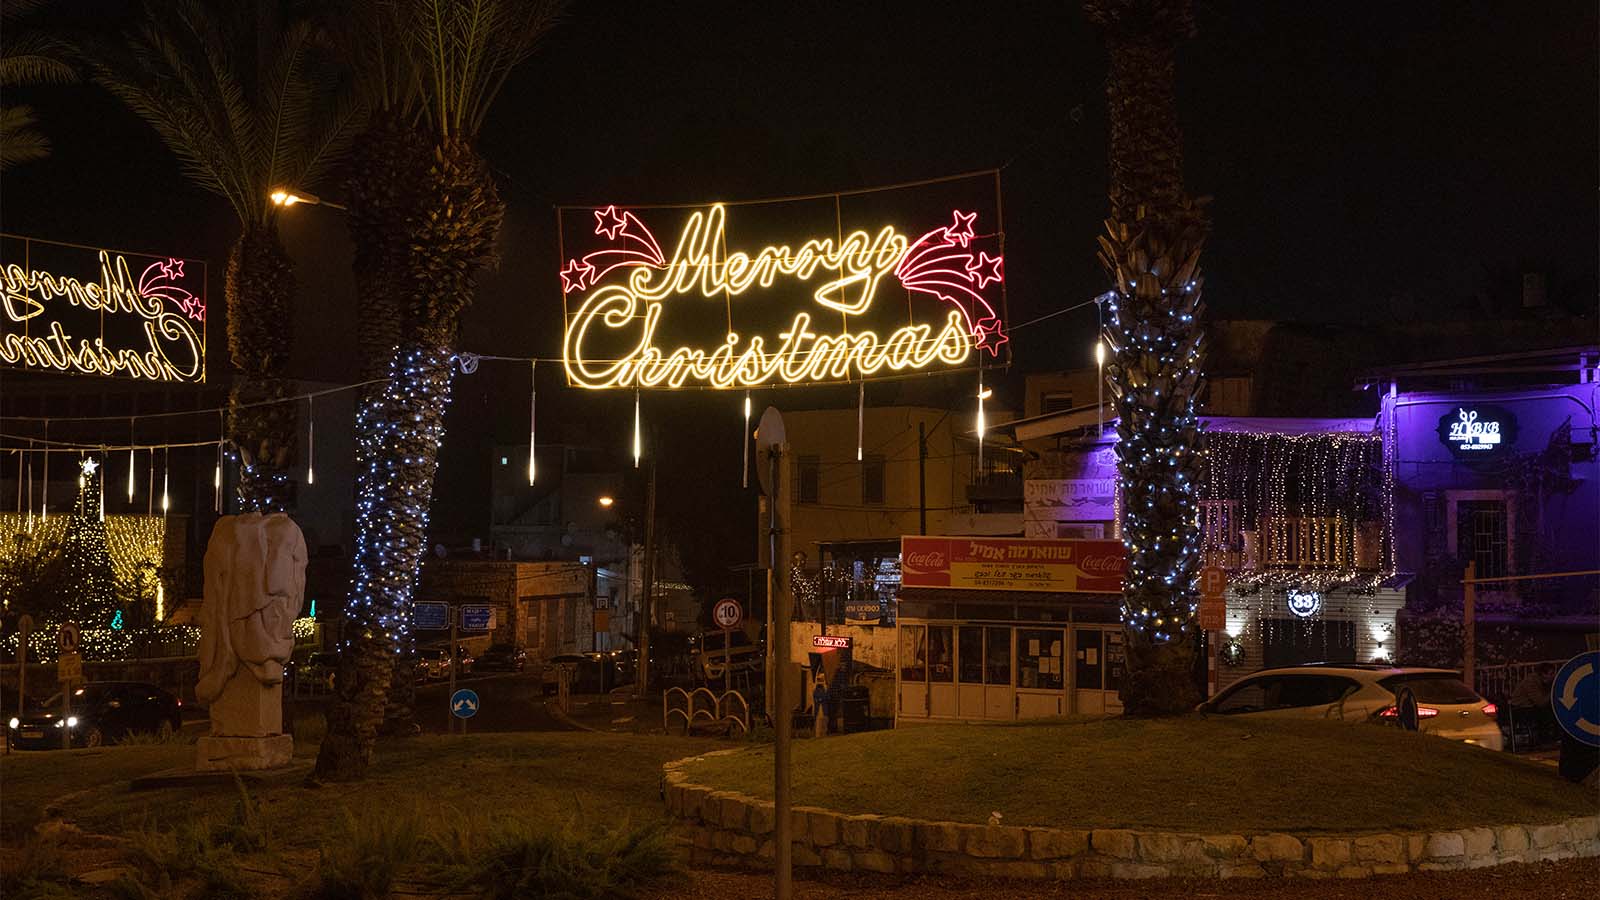 عيد ميلاد سعيد! الأضواء الملونة في دوارات حيفا. (تصوير: غيلعاد شريم)